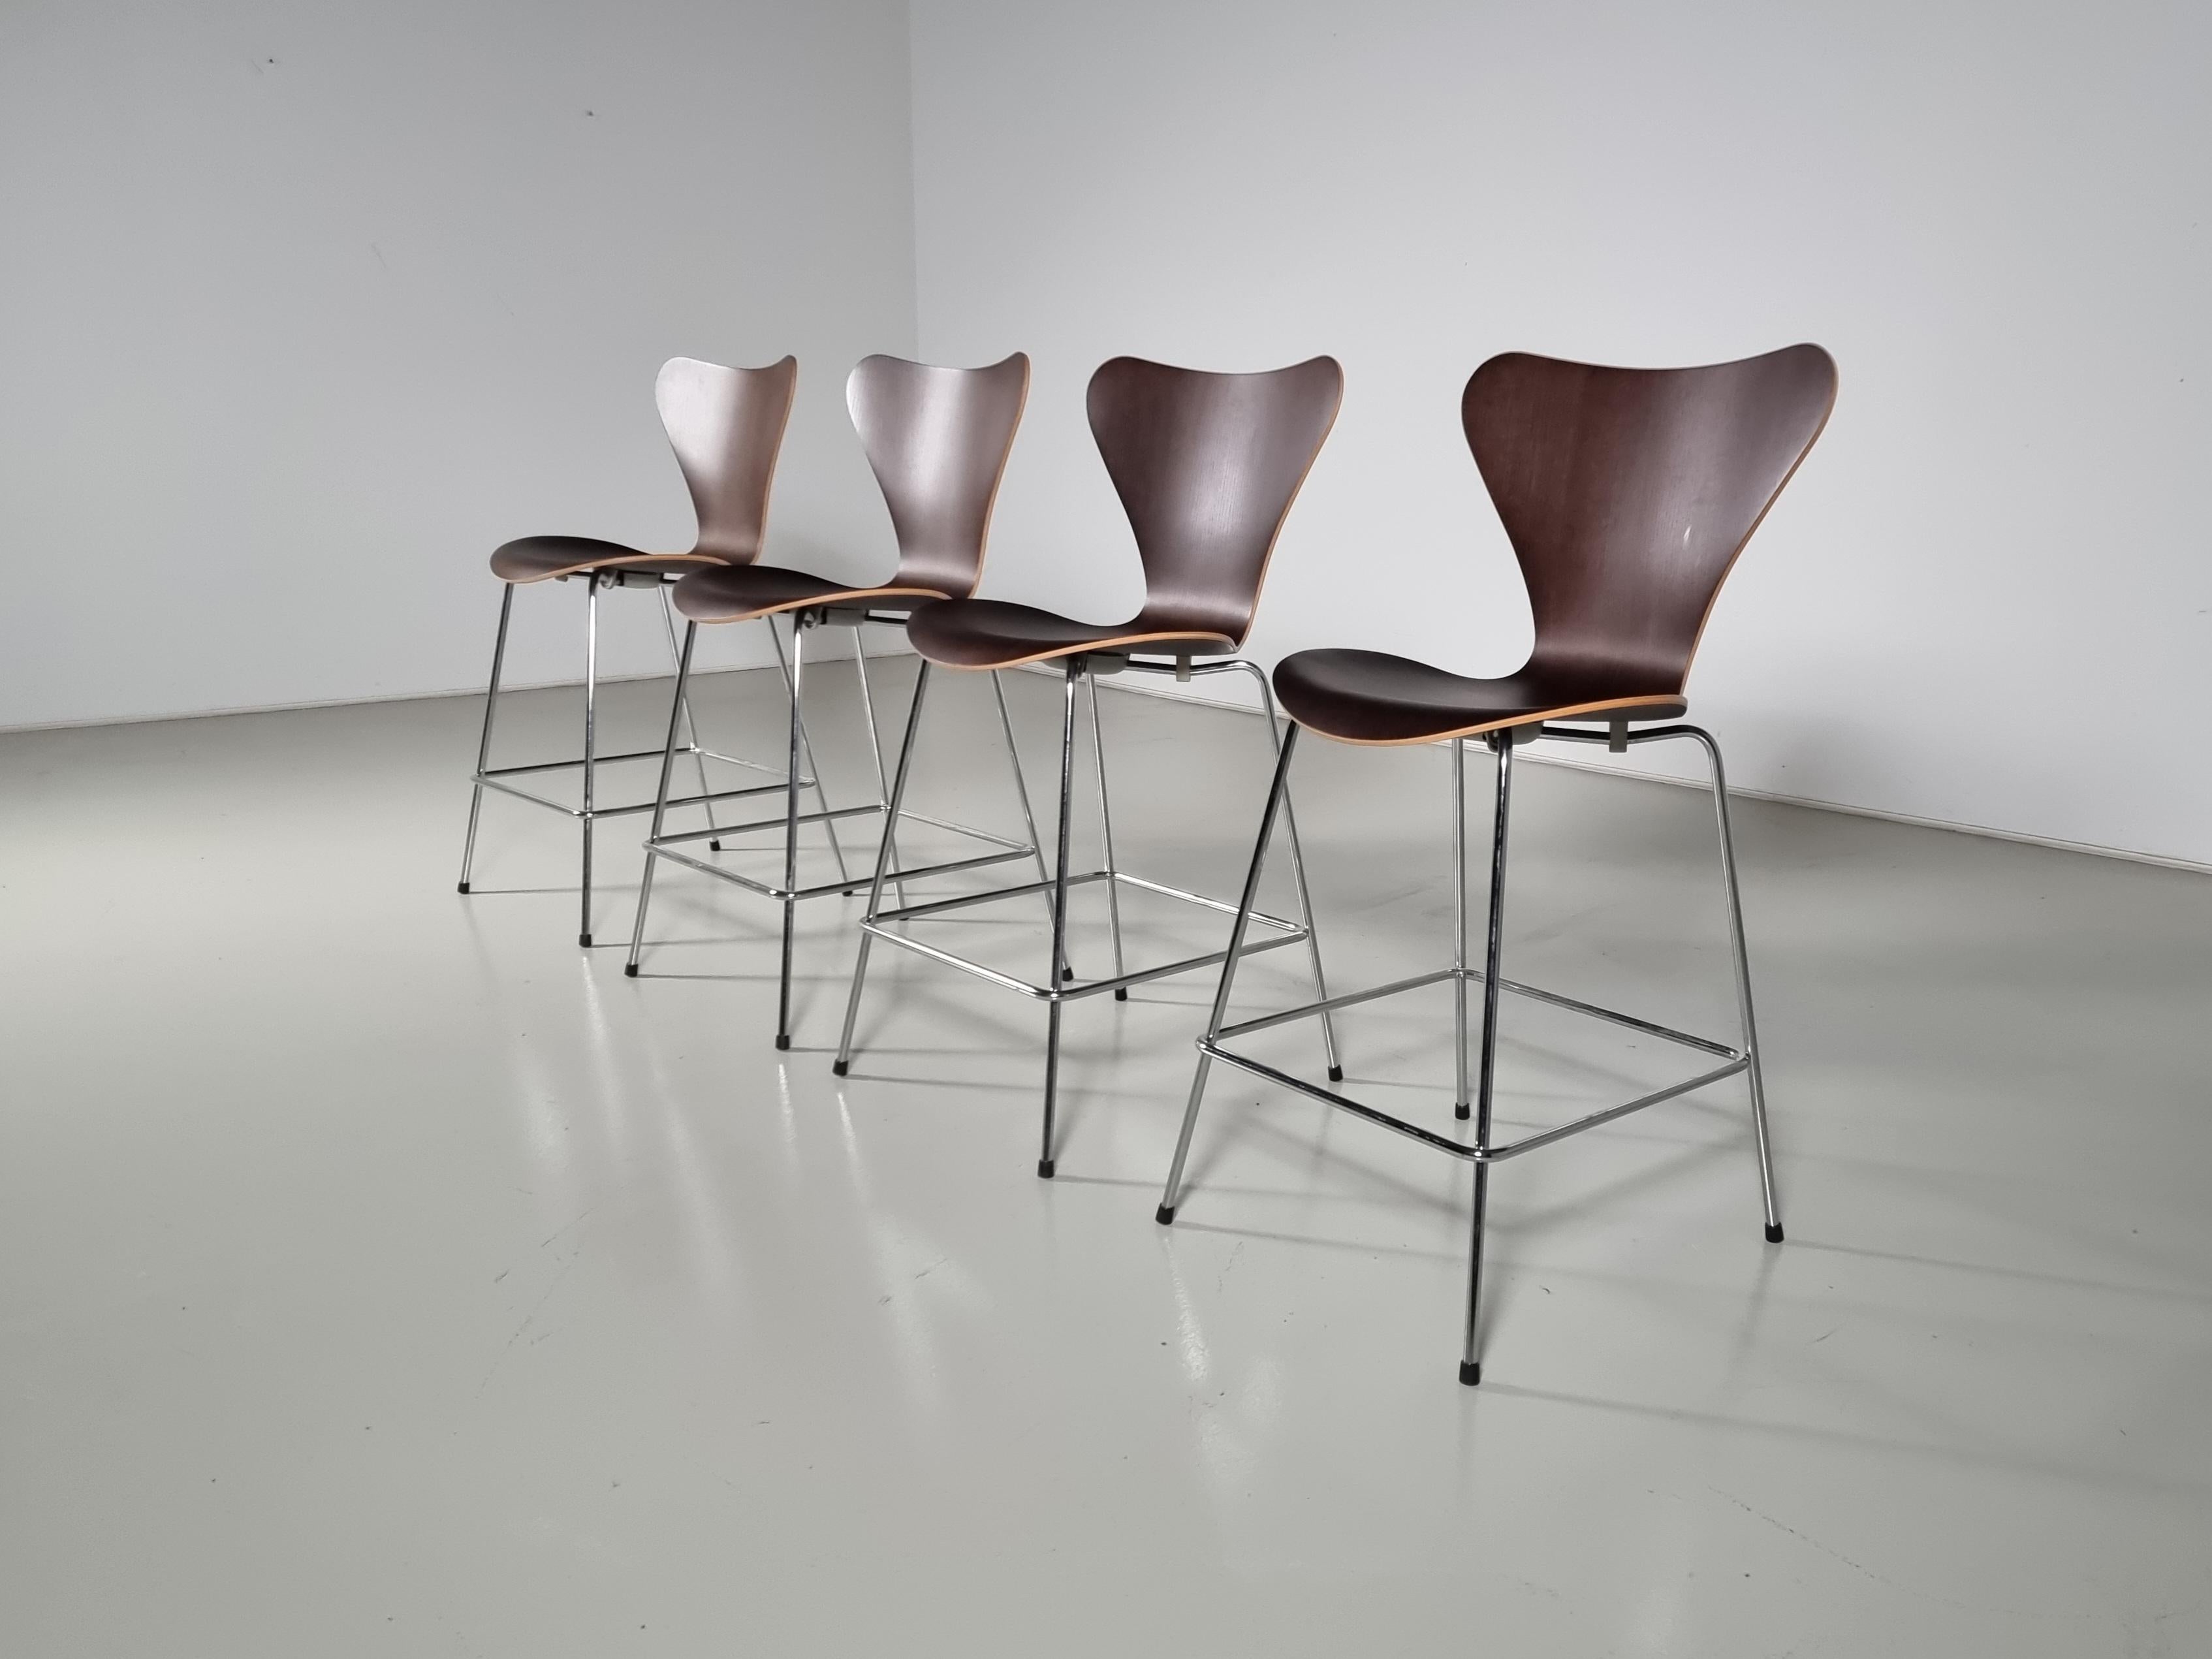 Le tabouret de bar de la série 7 de Fritz Hansen, conçu en 1955 par Arne Jacobsen.

L'assise est réalisée en contreplaqué de chêne teinté foncé courbé, une technique qu'il avait déjà utilisée pour la Ant Chair. La série 7 Butterfly est considérée